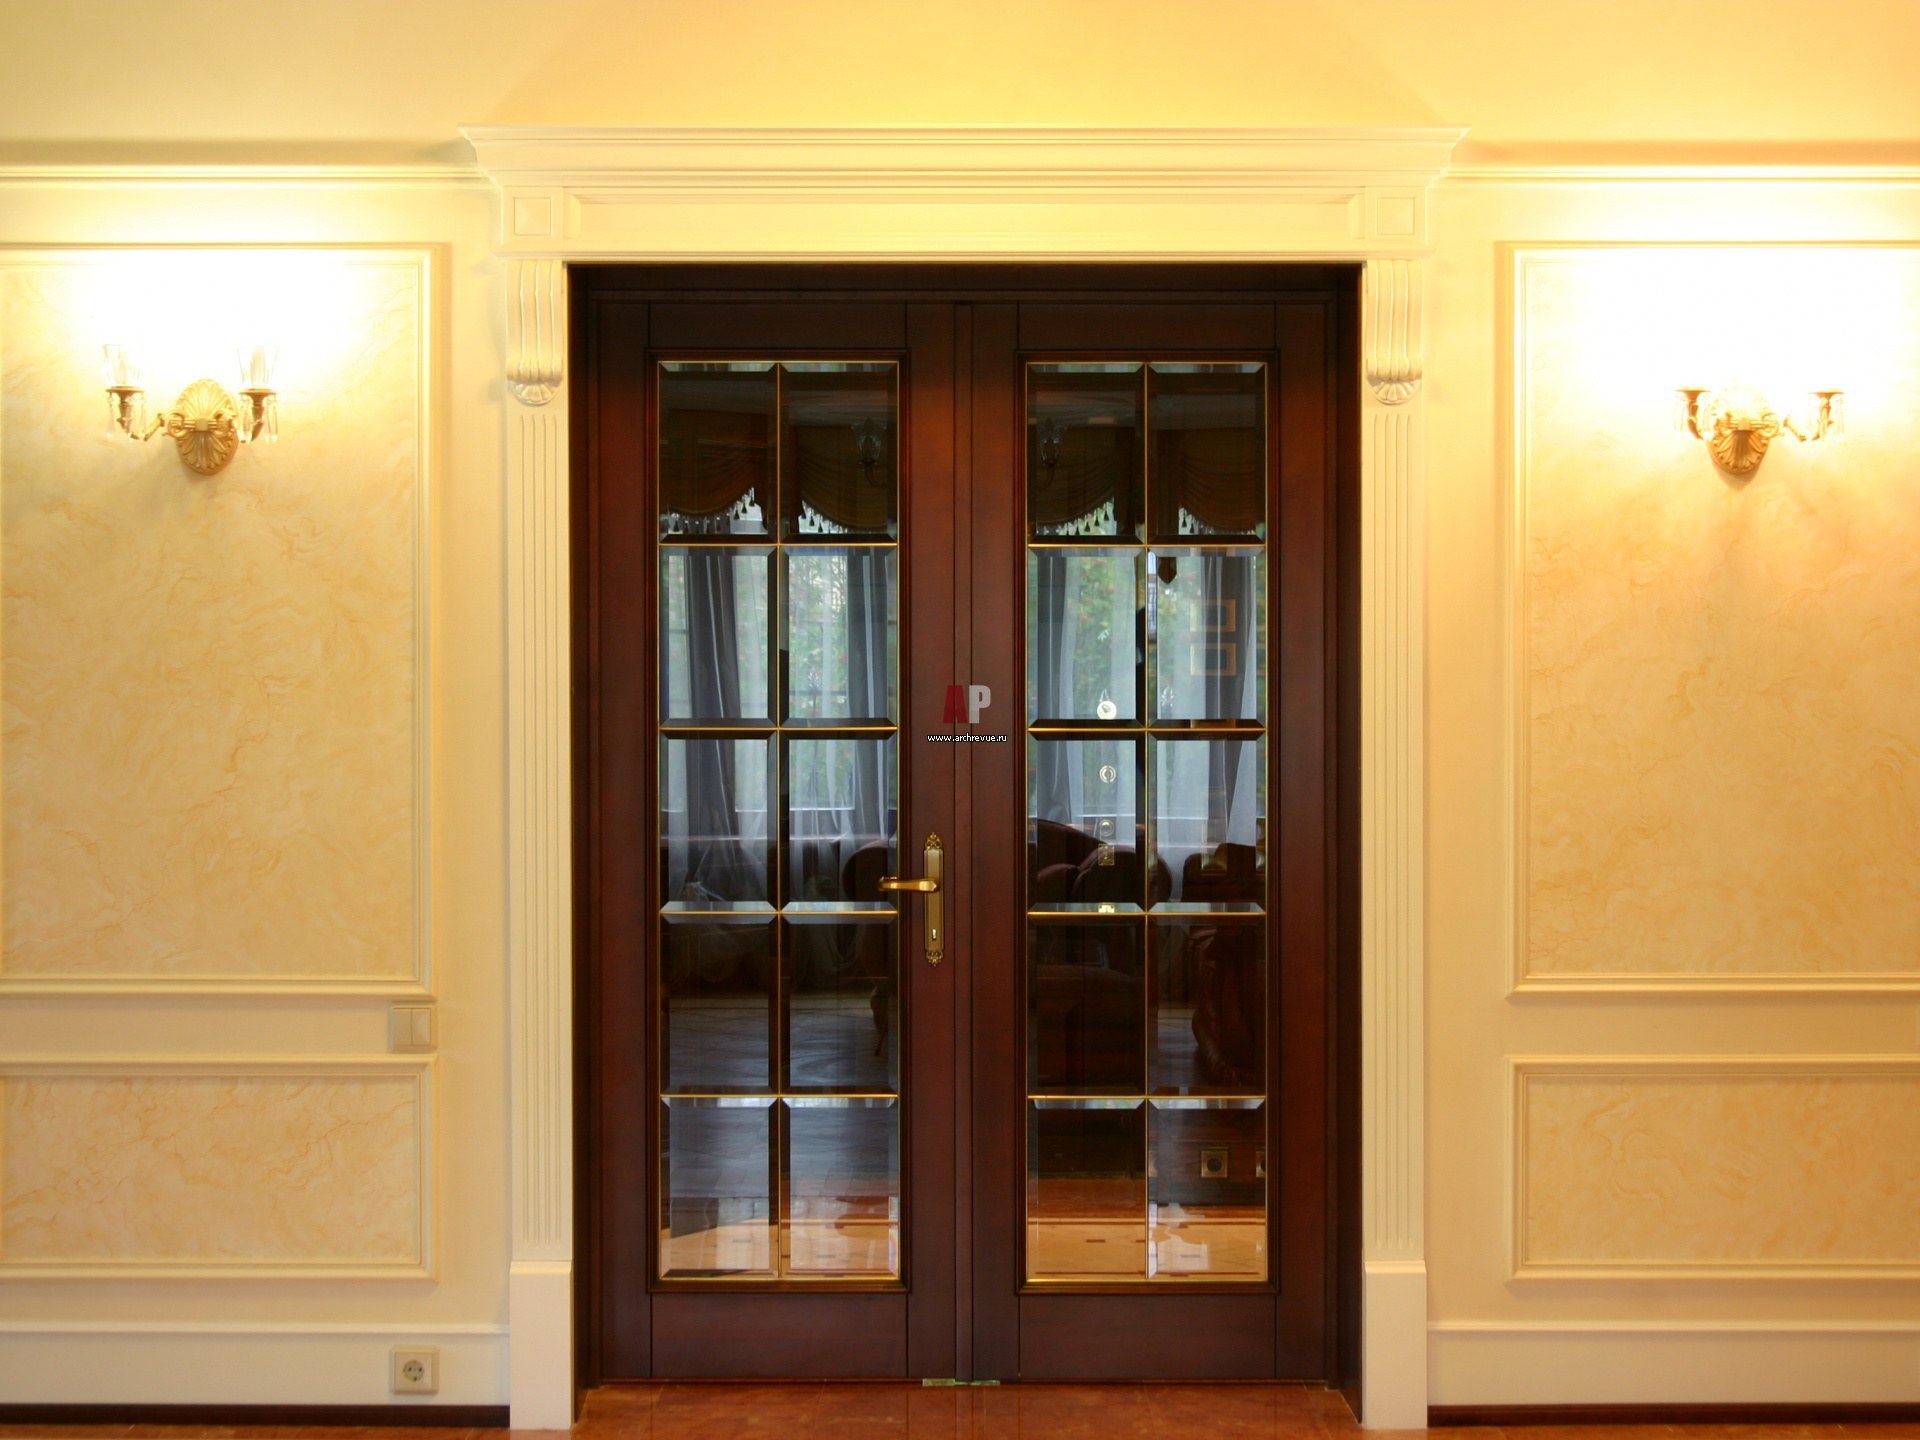 Купить широкую дверь. Двери в интерьере. Двойные двери. Двери в английском стиле межкомнатные. Классические двери межкомнатные.